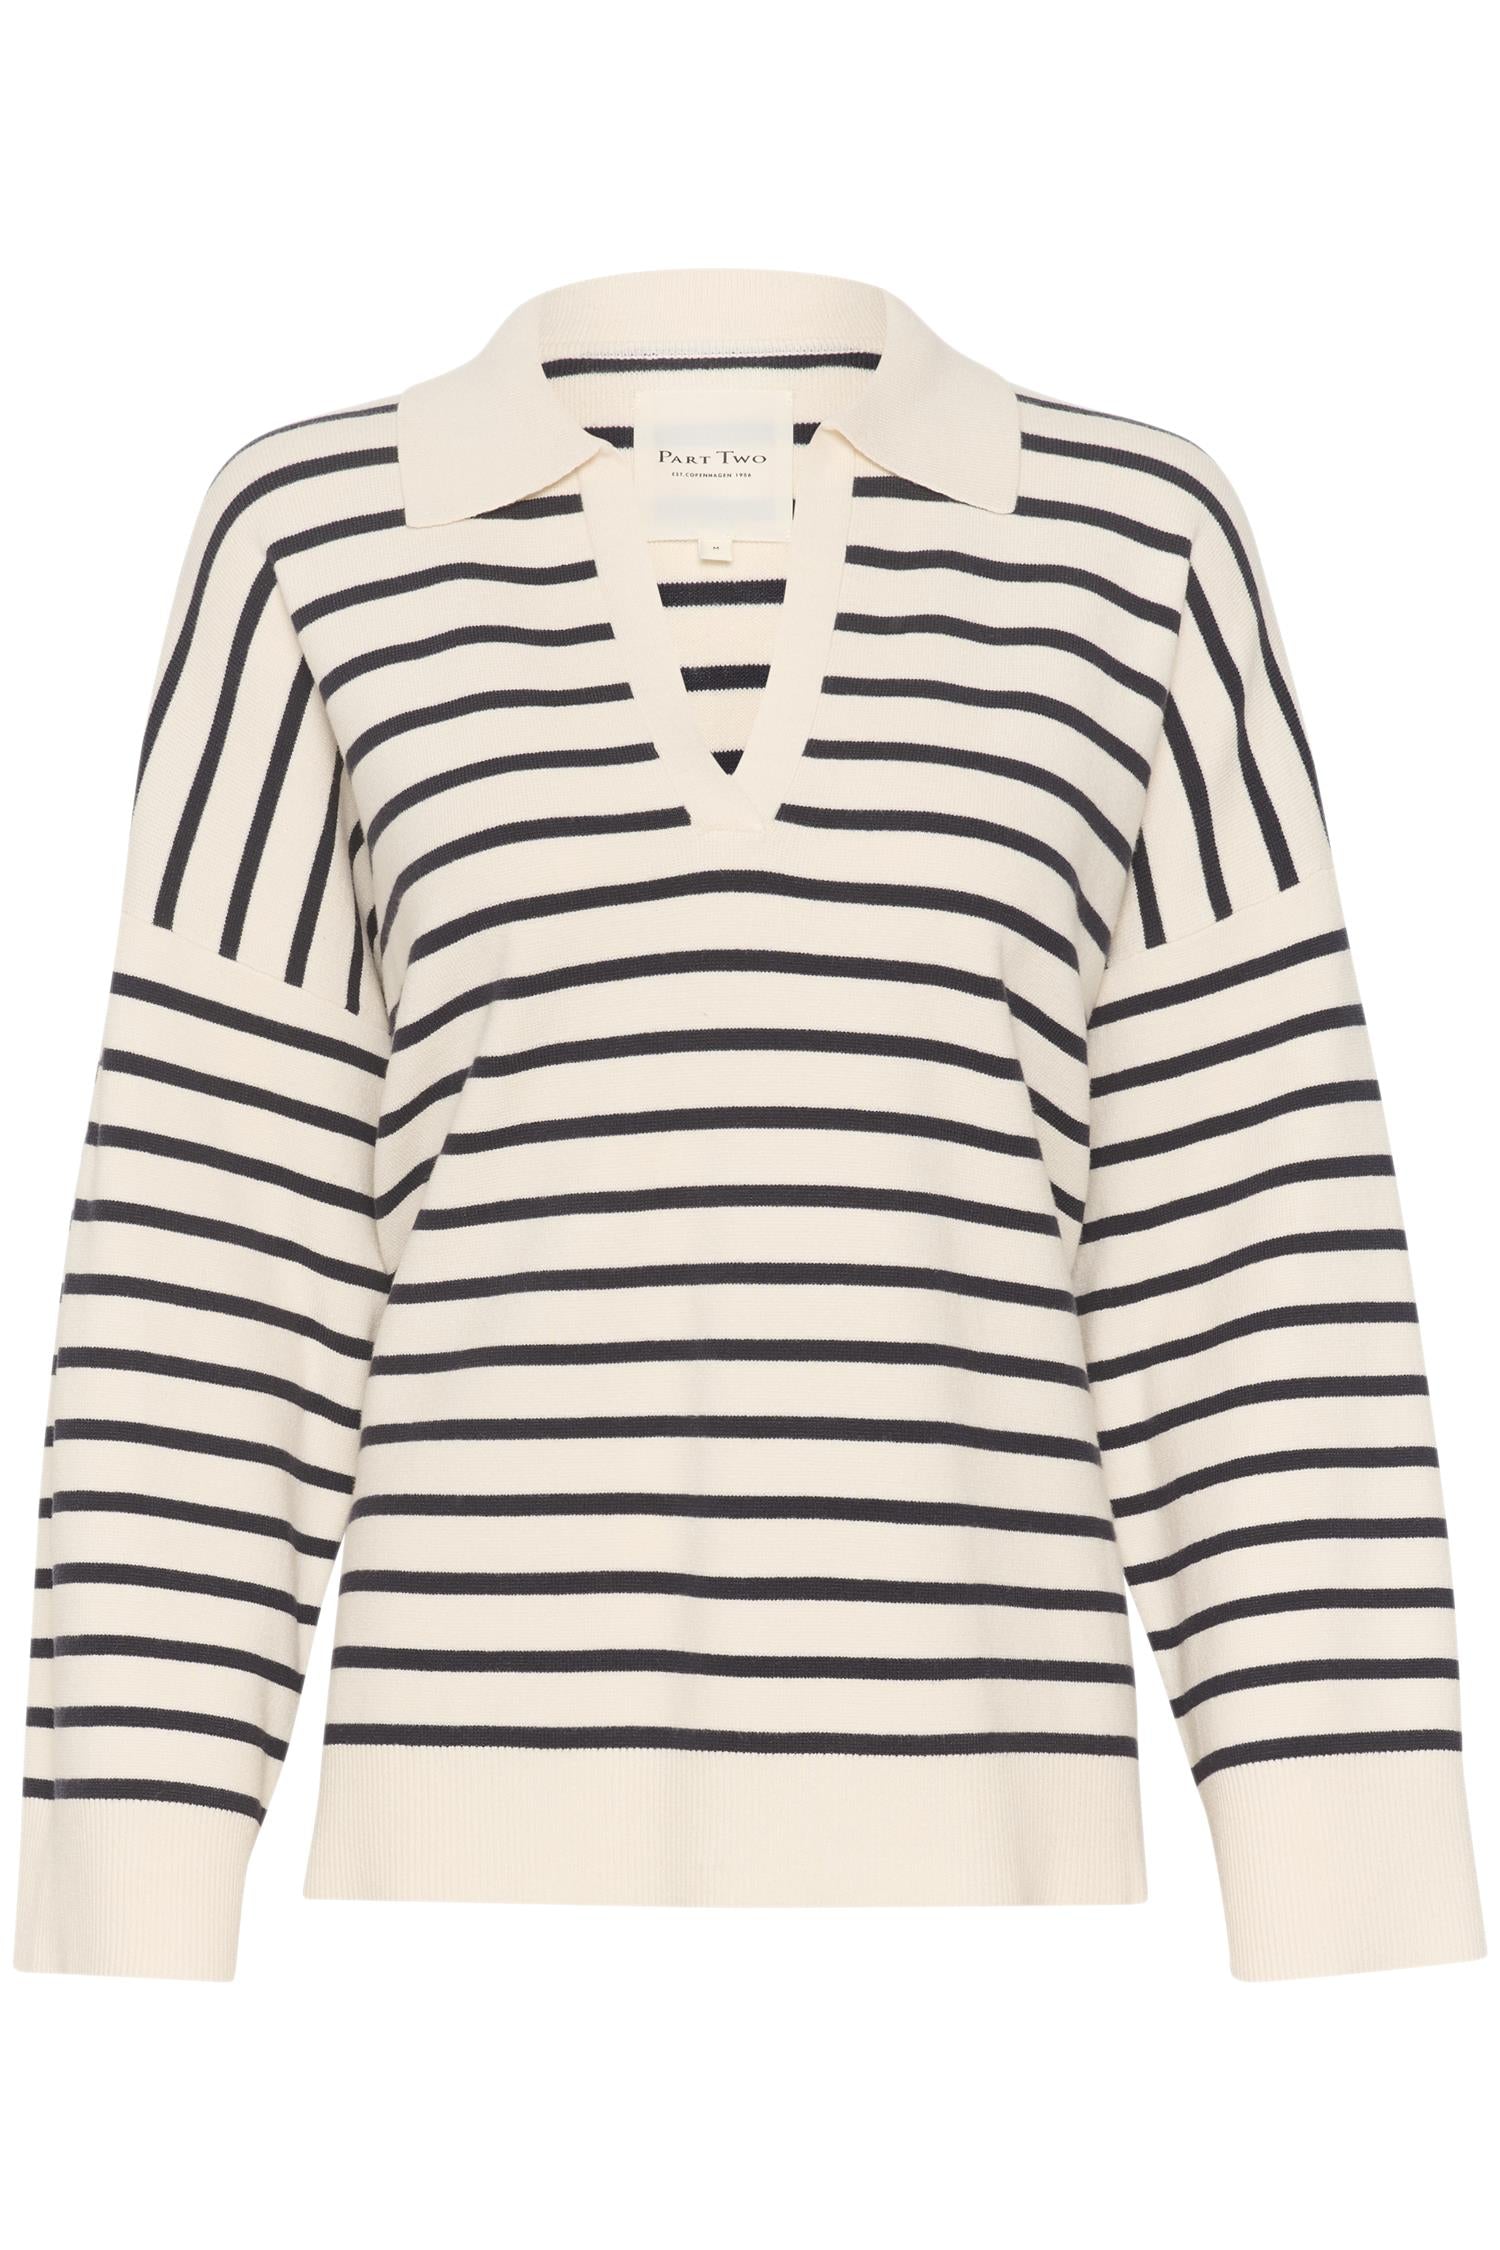 Part Two Natara sweater - Dark Navy Stripe